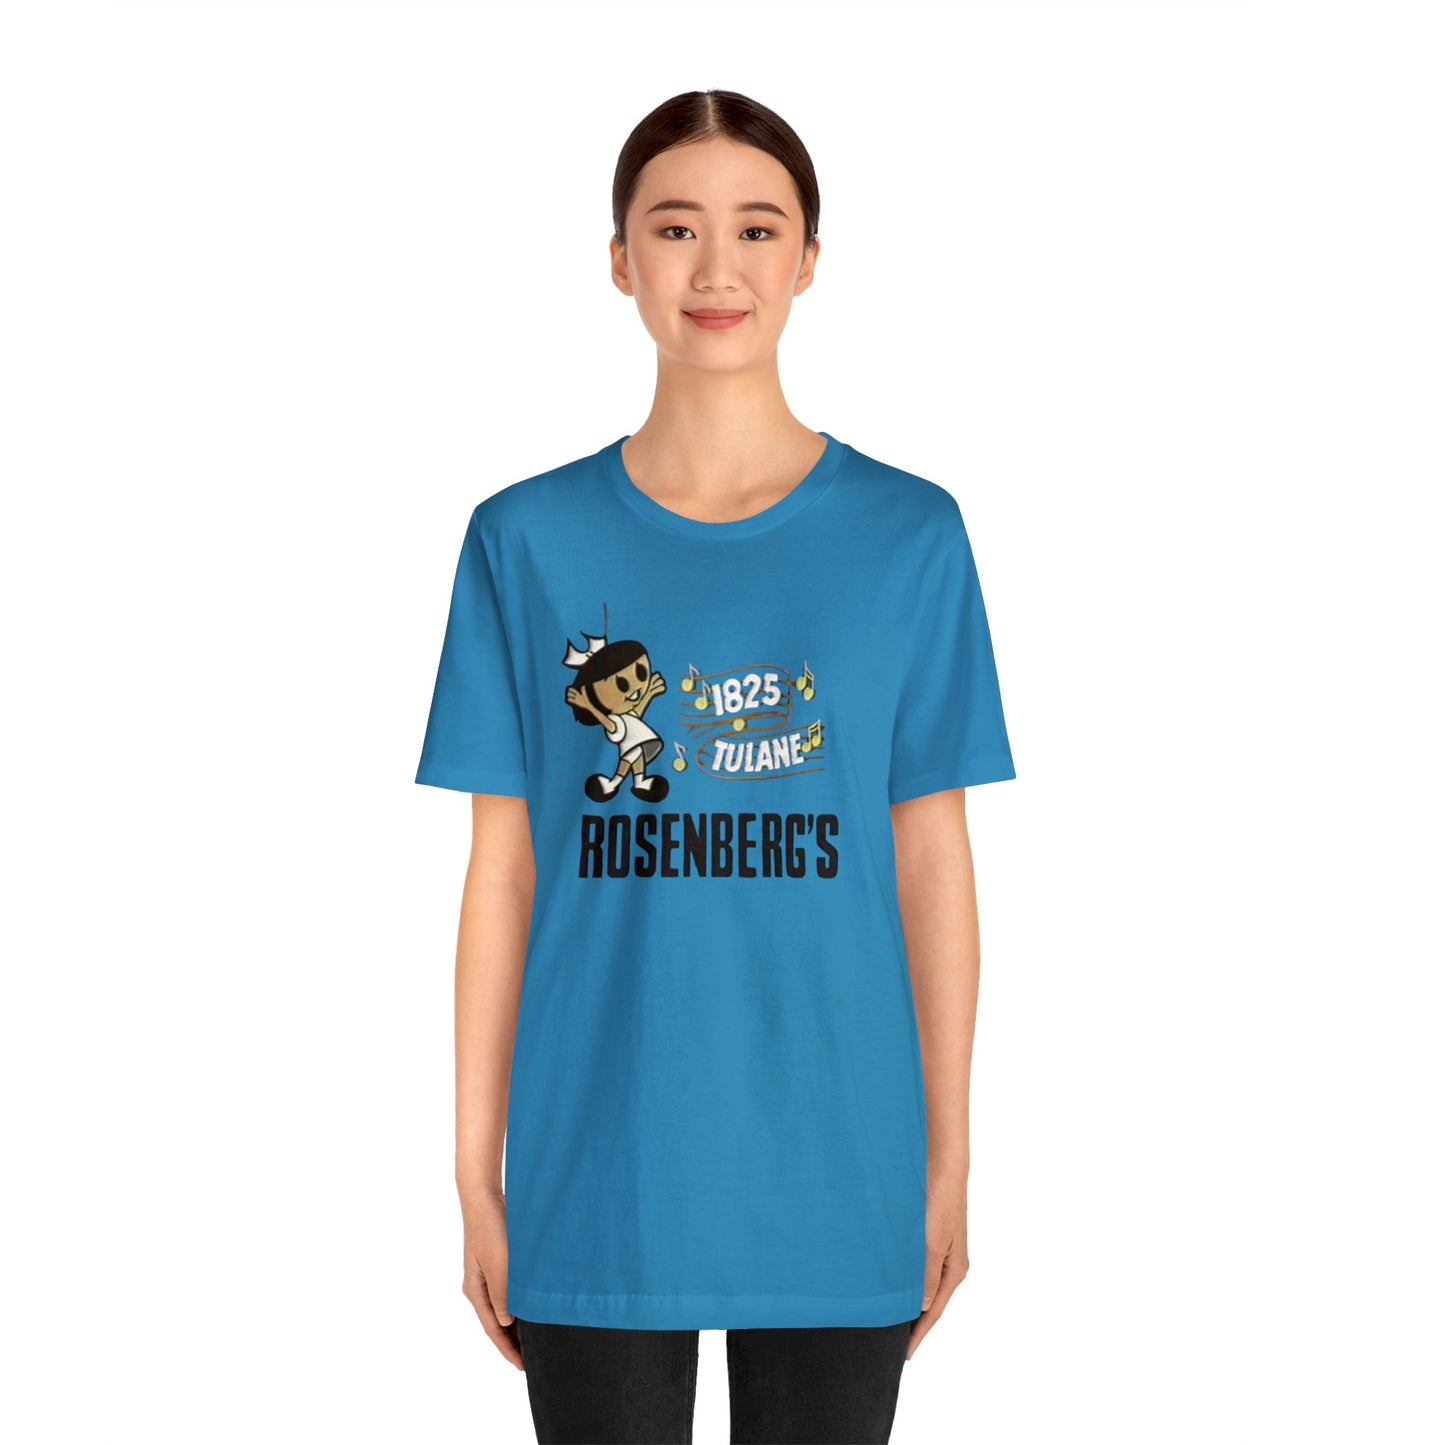 Men's Rosenberg's T-shirt